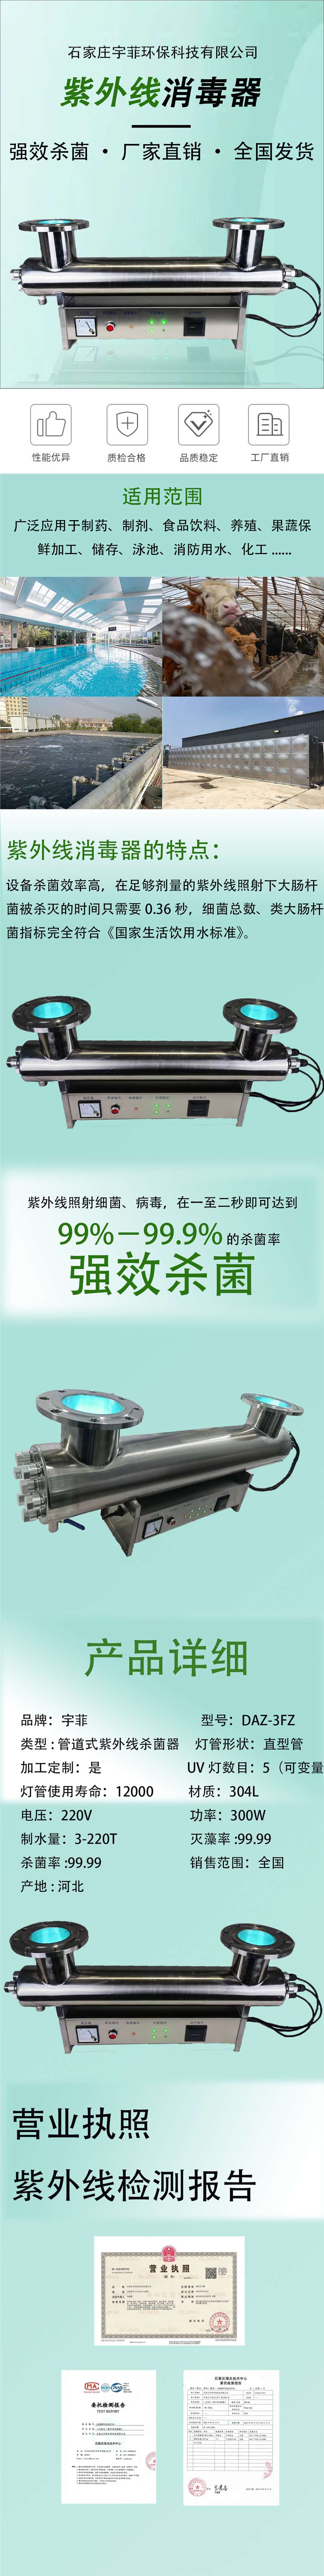 天津宇菲饮用水紫外线消毒器二次供水专用